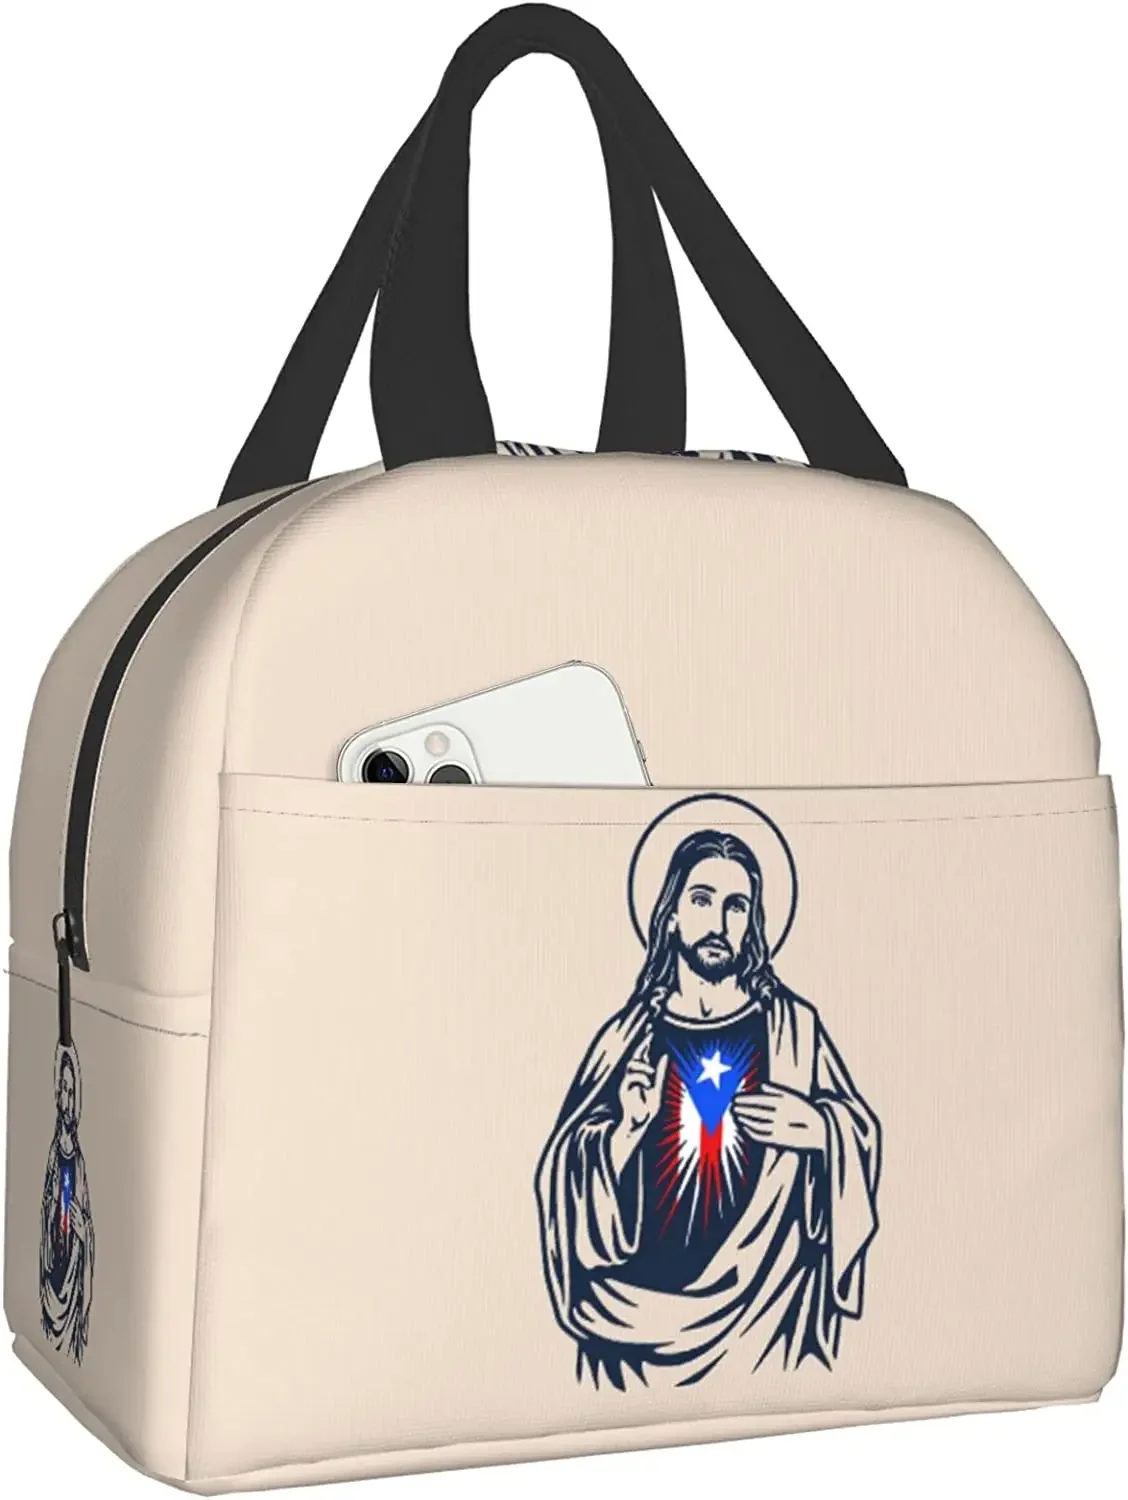 

Изолированная сумка для ланча, многоразовая Термосумка-холодильник в Пуэрто-Рико с Иисусом, сумка-тоут с передним карманом для женщин и мужчин, для путешествий, работы, пешего туризма, пикника